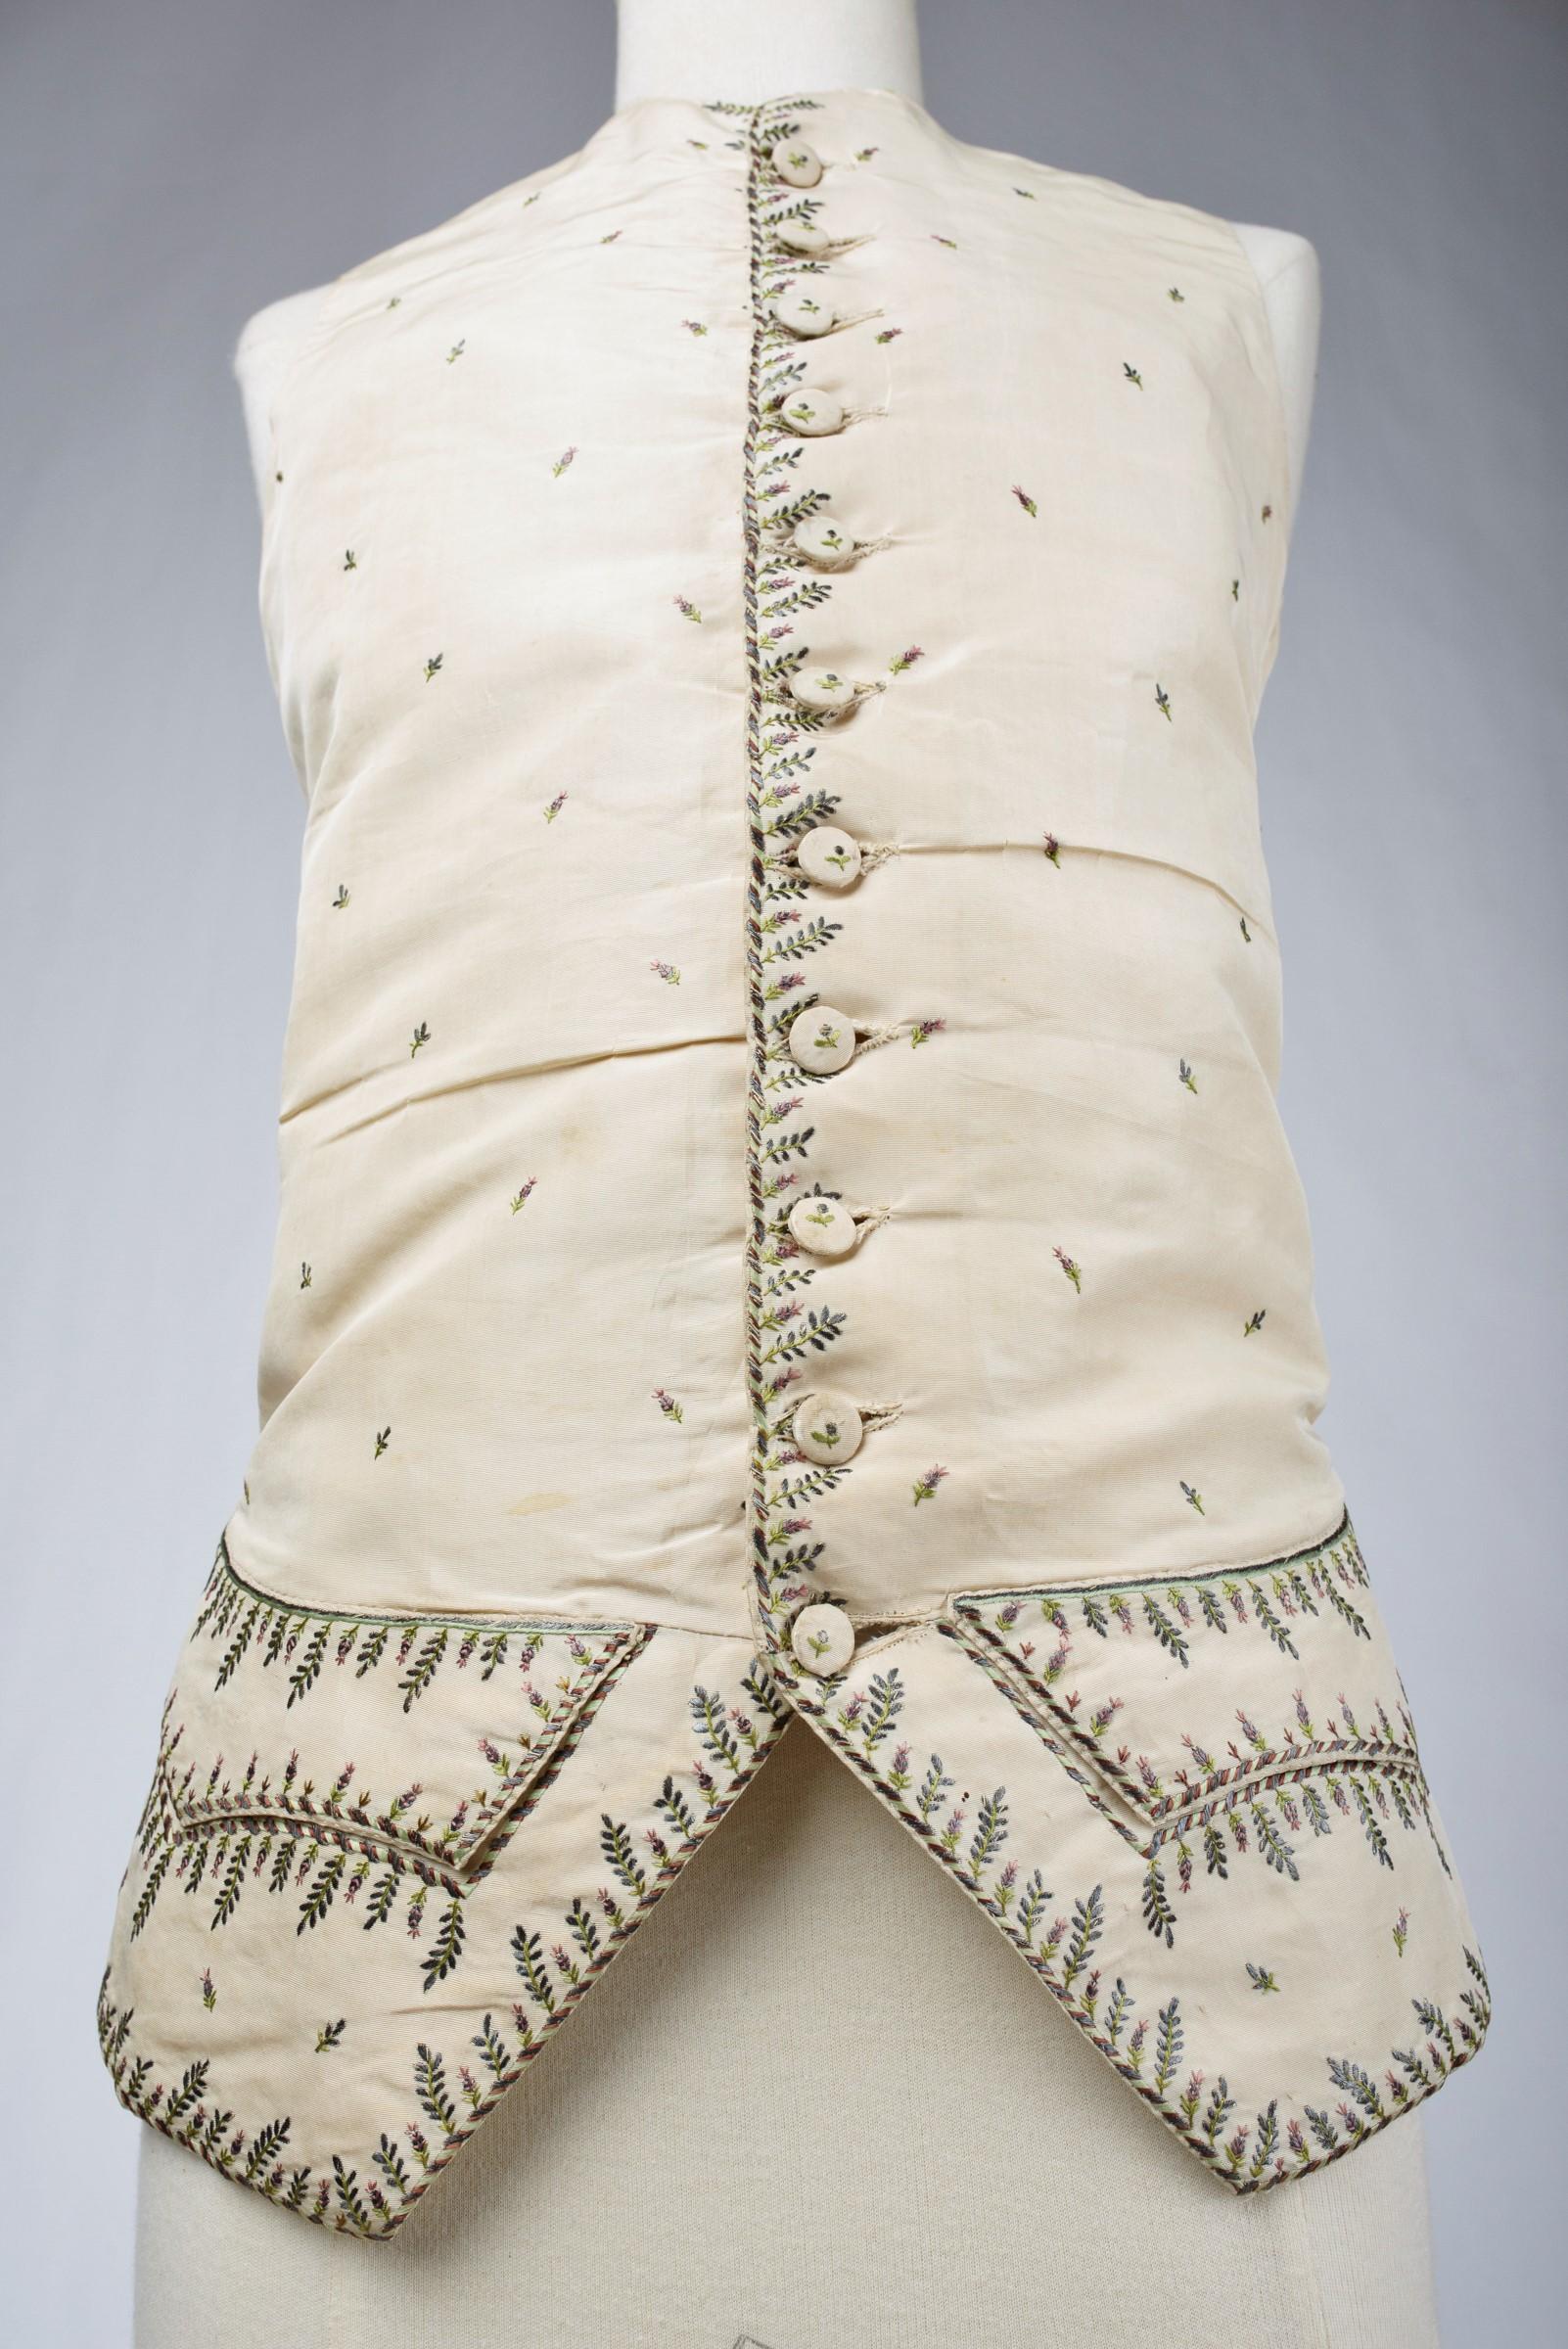 18th century ruffle shirt